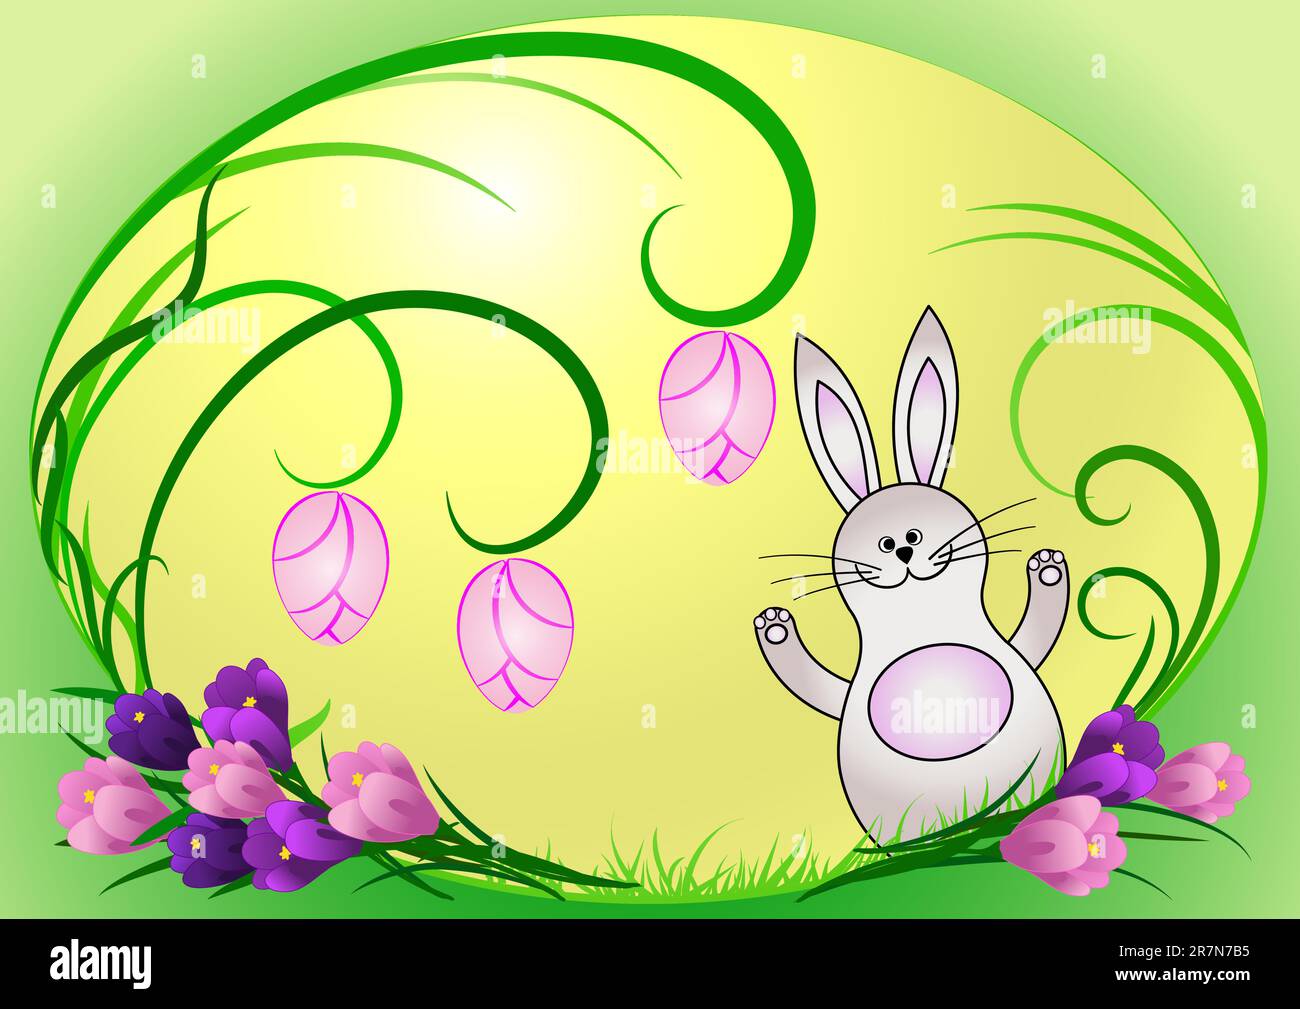 Oeuf de Pâques peint avec lui le lapin de Noël et les lames d'herbe, le crocus de printemps à côté de lui Illustration de Vecteur